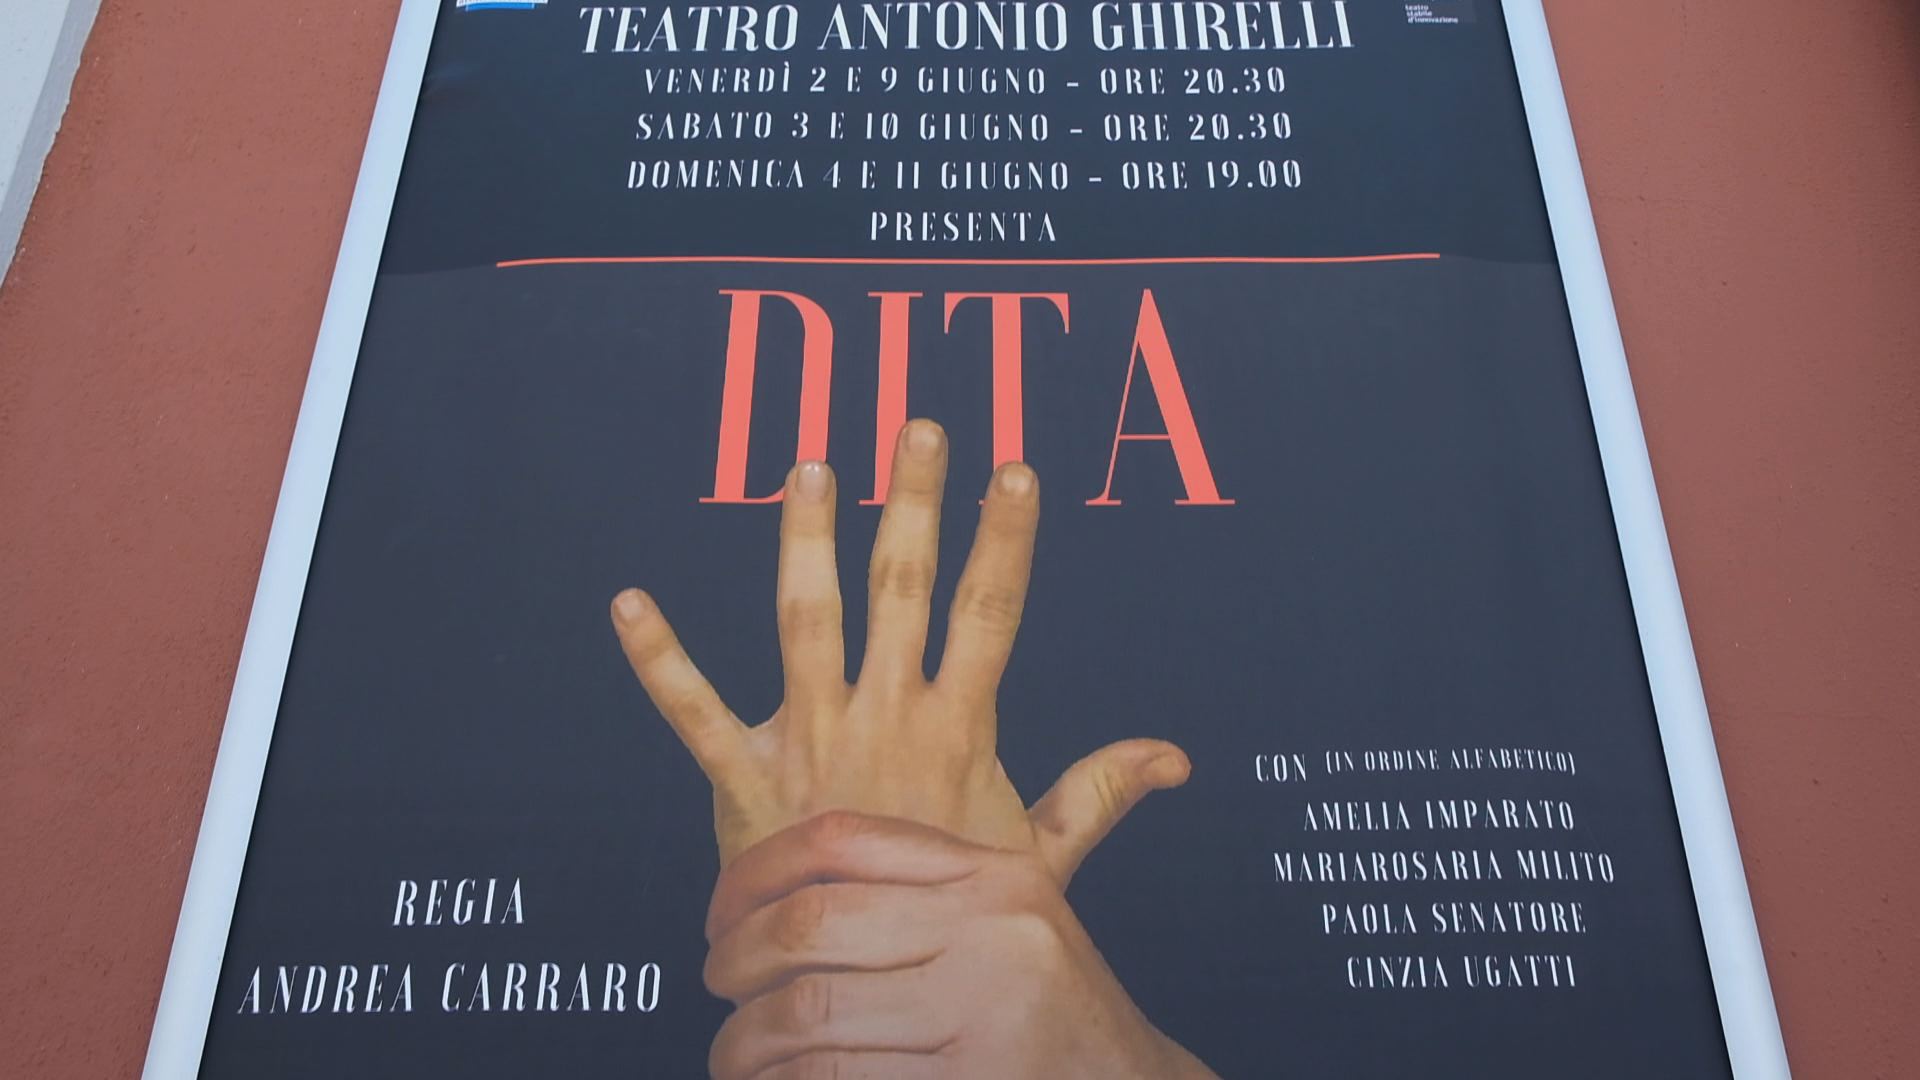 Salerno: “Dita” di Andrea Carrano, repliche a Teatro Ghirelli